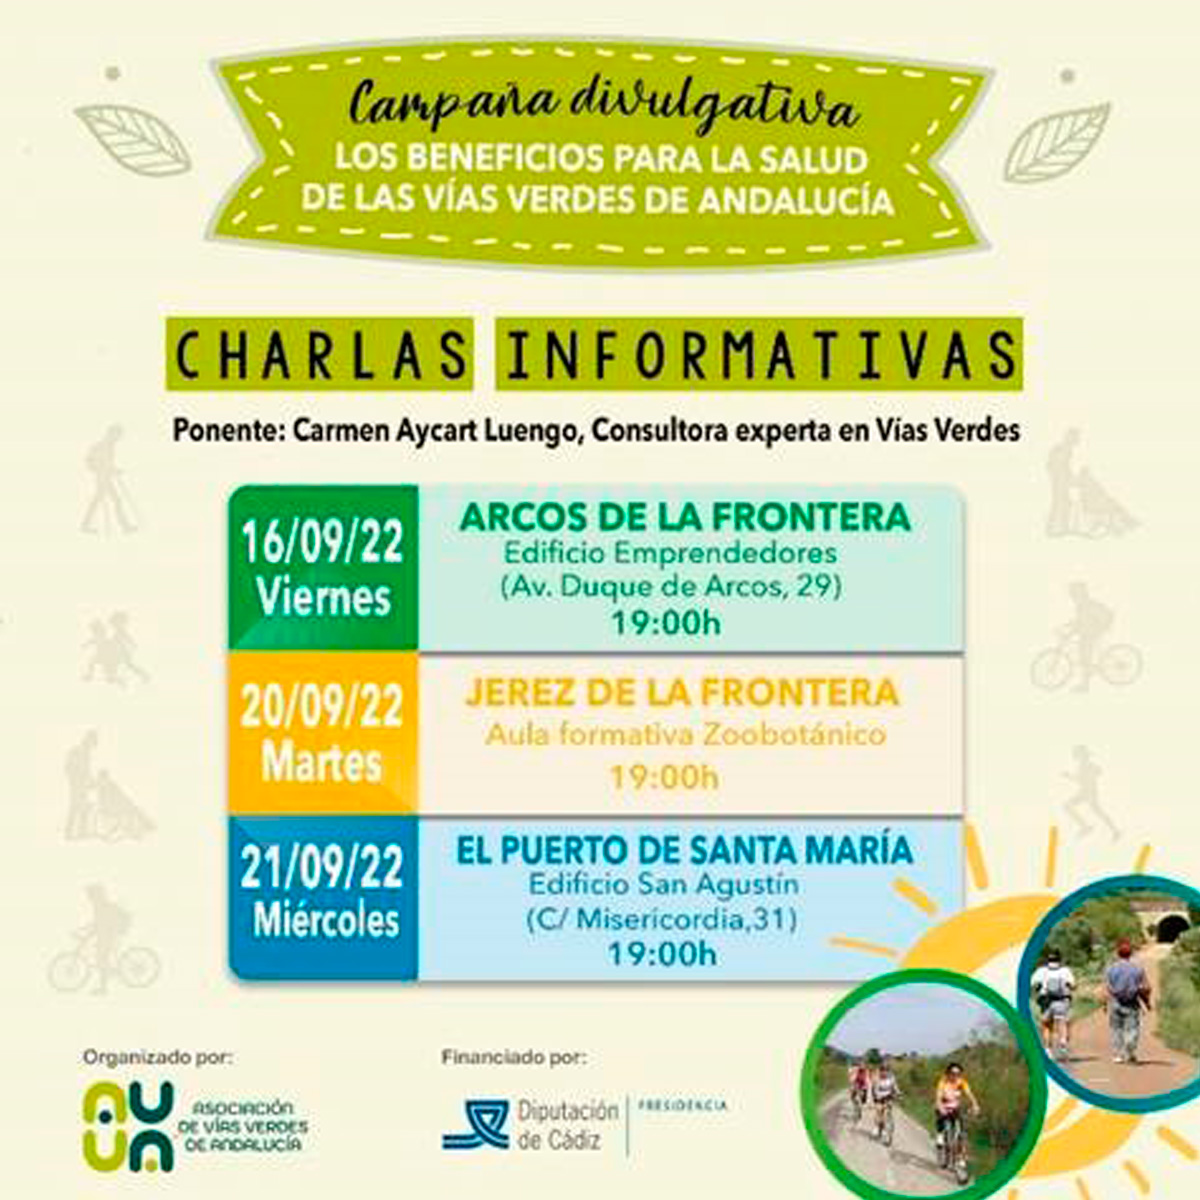 Vas Verdes de Andaluca y salud los das 16, 20 y 21 de septiembre